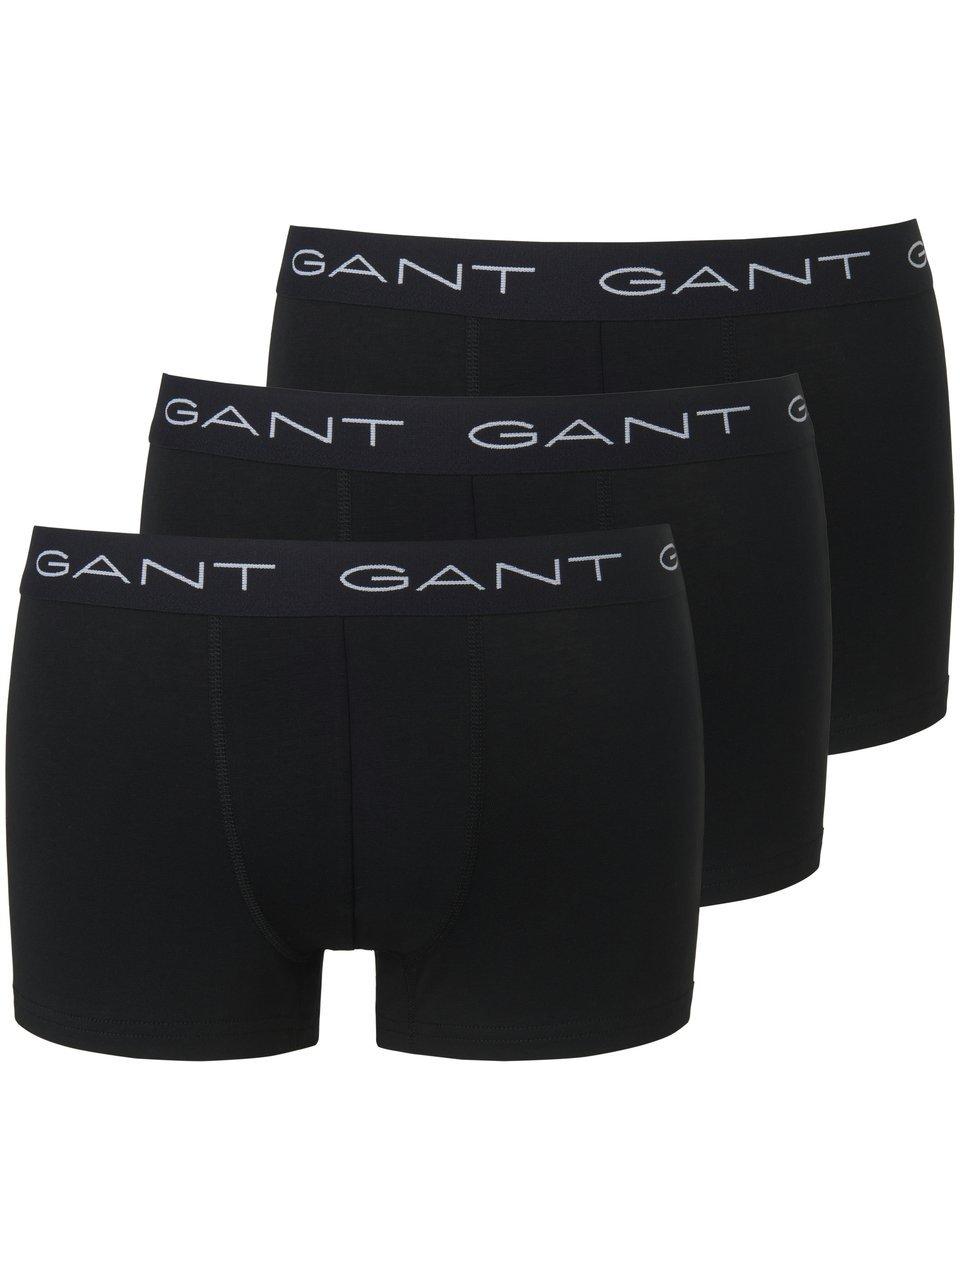 GANT essentials 3P trunks zwart - M